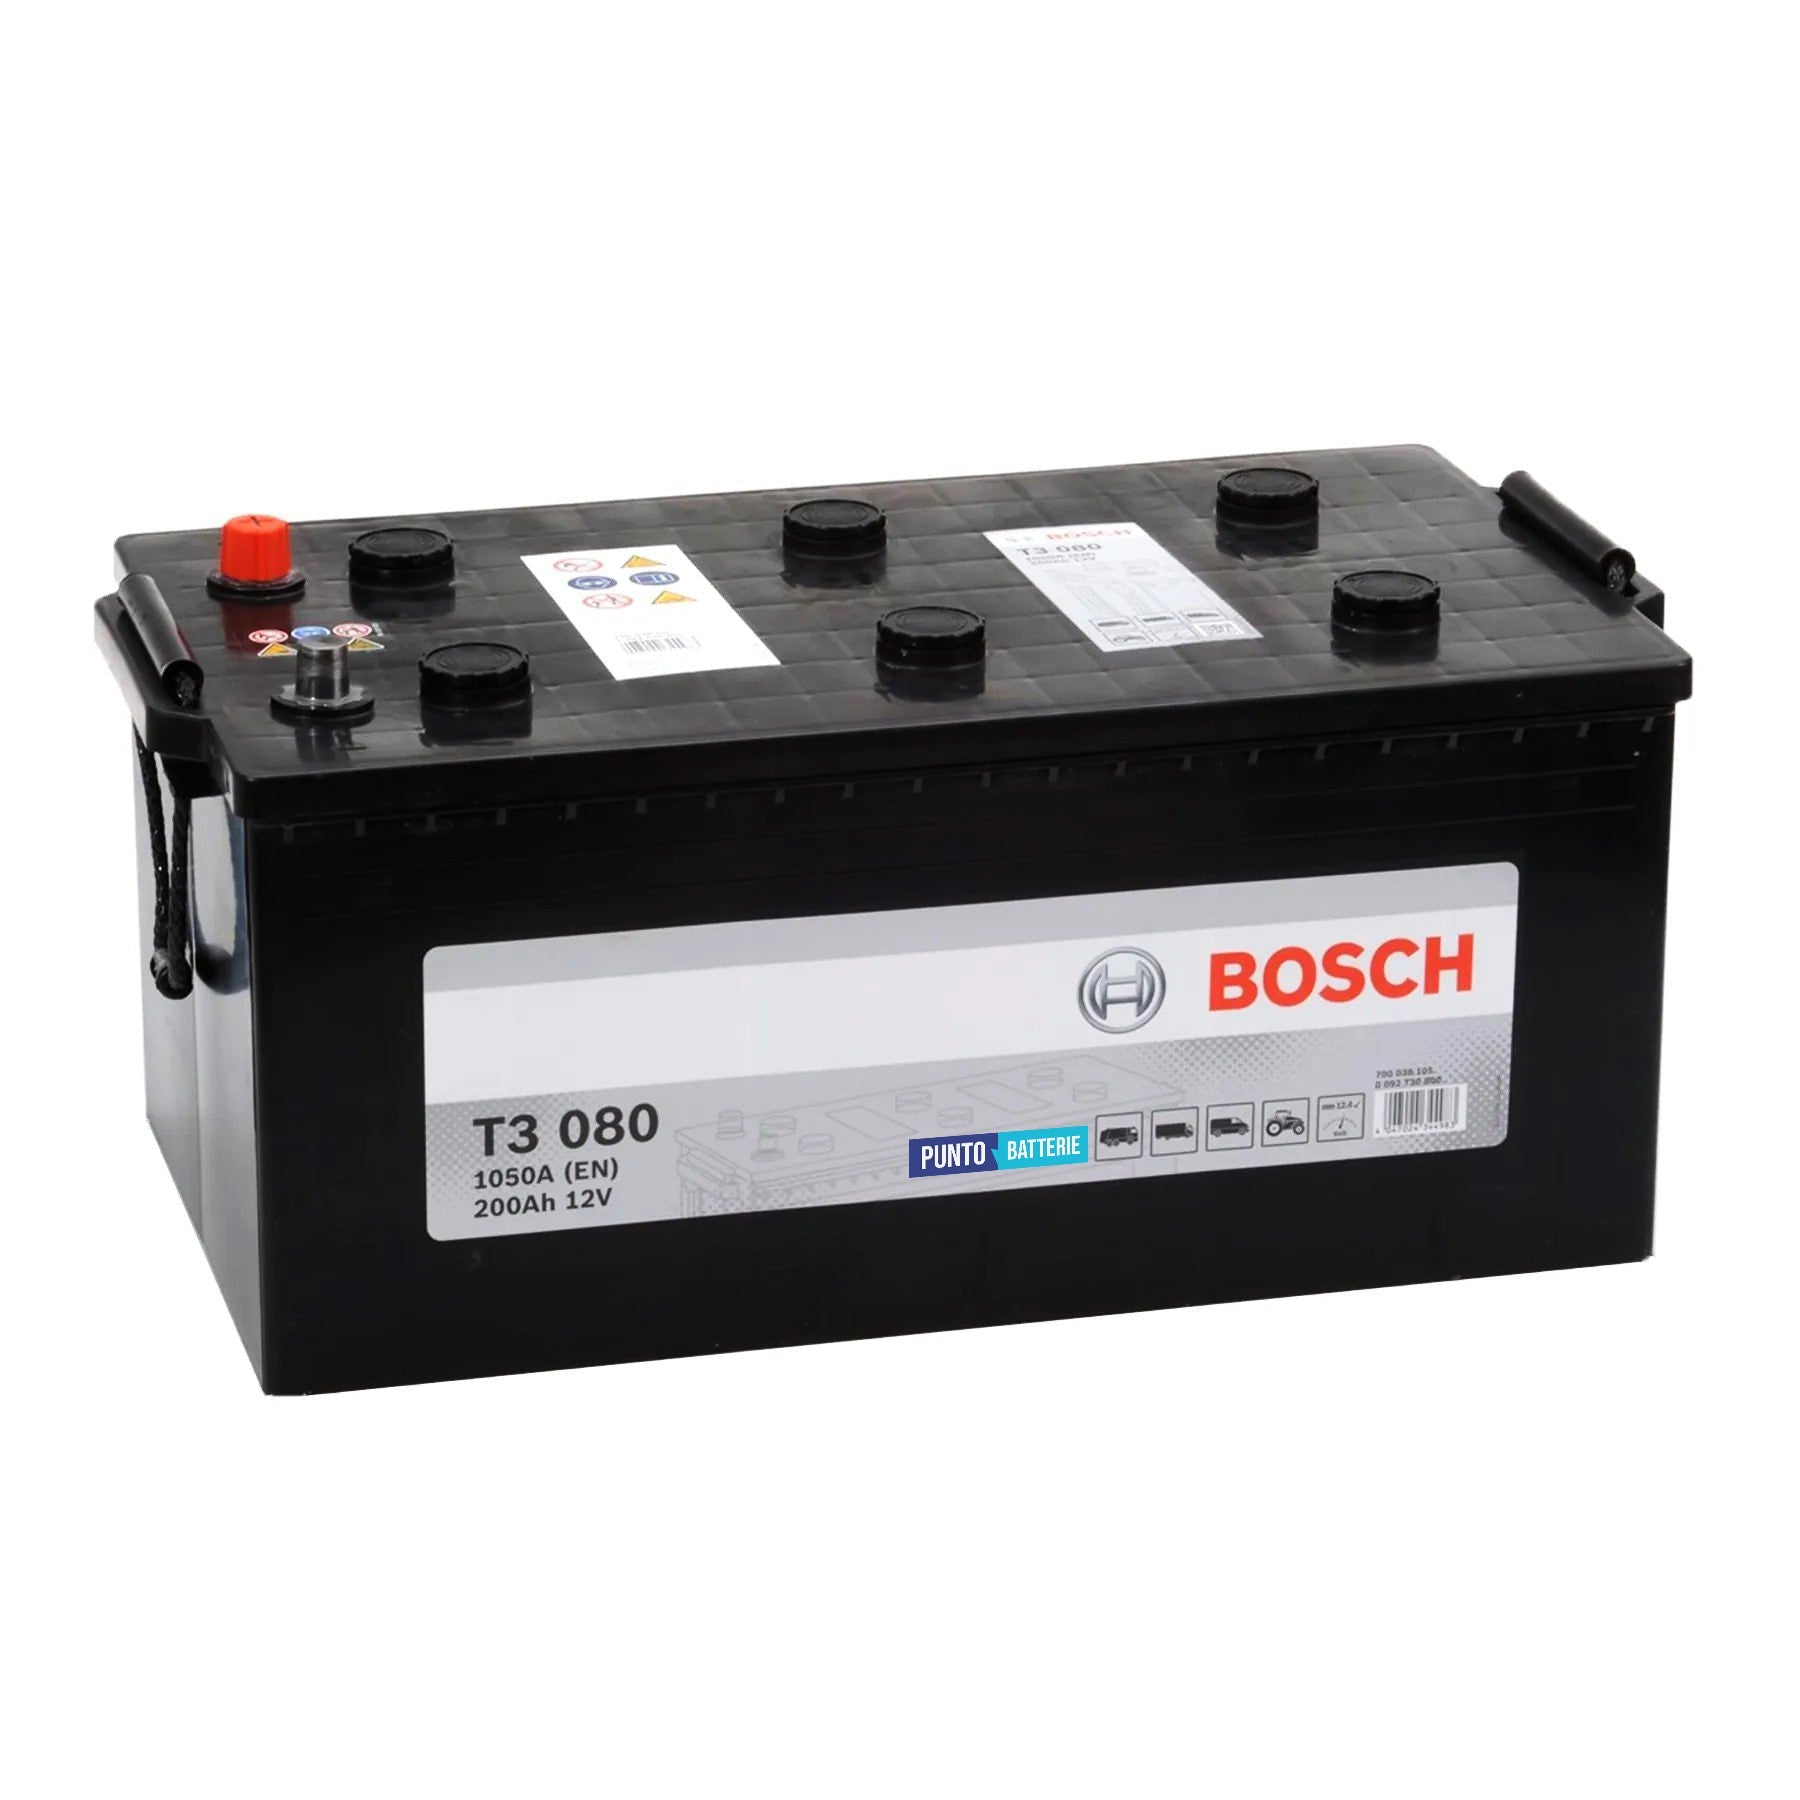 Batteria originale Bosch T3 T3080, dimensioni 518 x 276 x 242, polo positivo a sinistra, 12 volt, 200 amperora, 1050 ampere. Batteria per camion e veicoli pesanti.